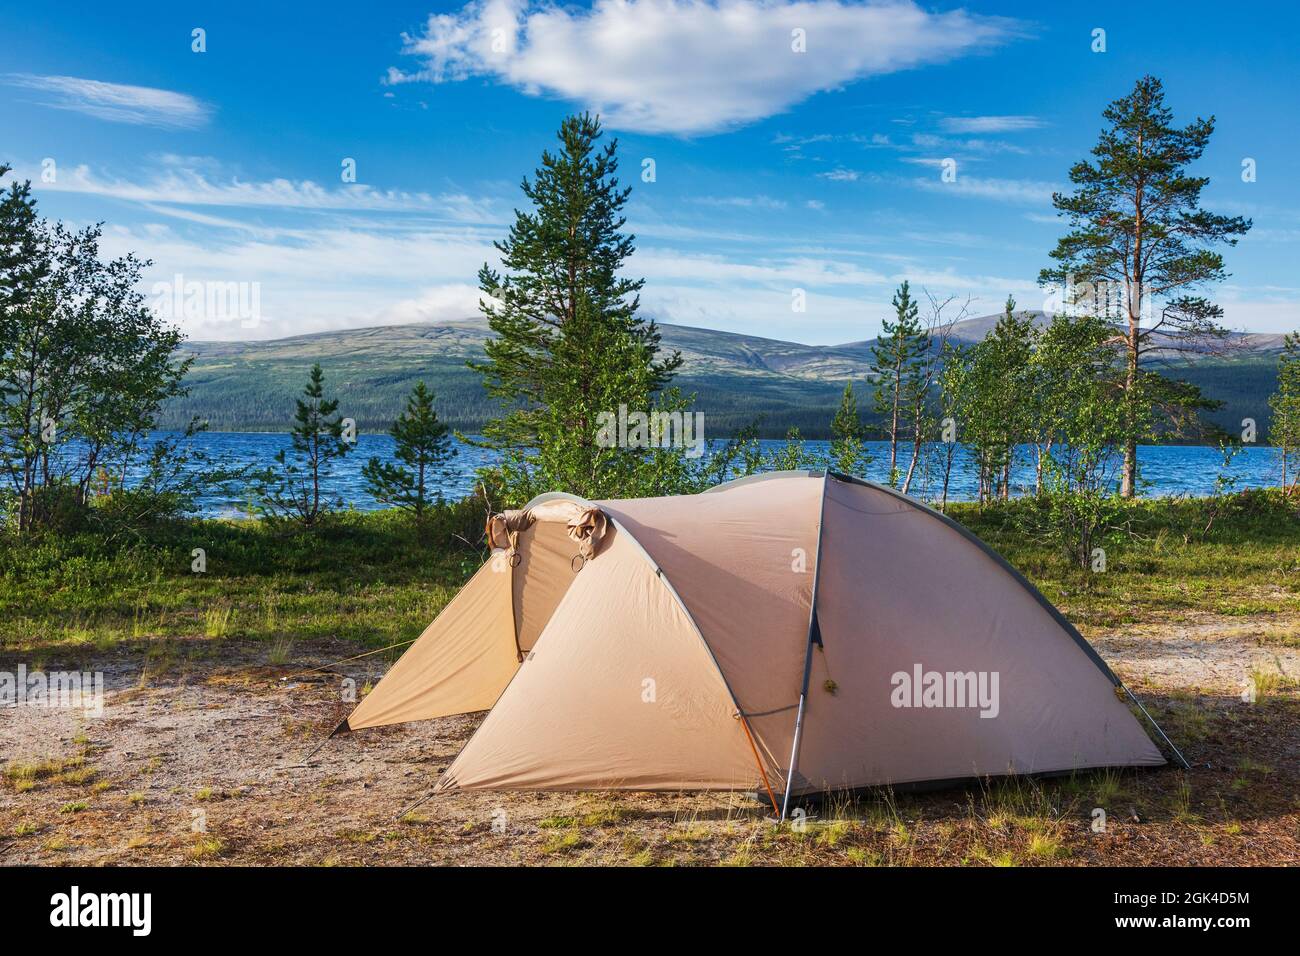 Camping tenda in campeggio panoramico su un lago con una catena montuosa in background - concetto di campeggio selvaggio Foto Stock